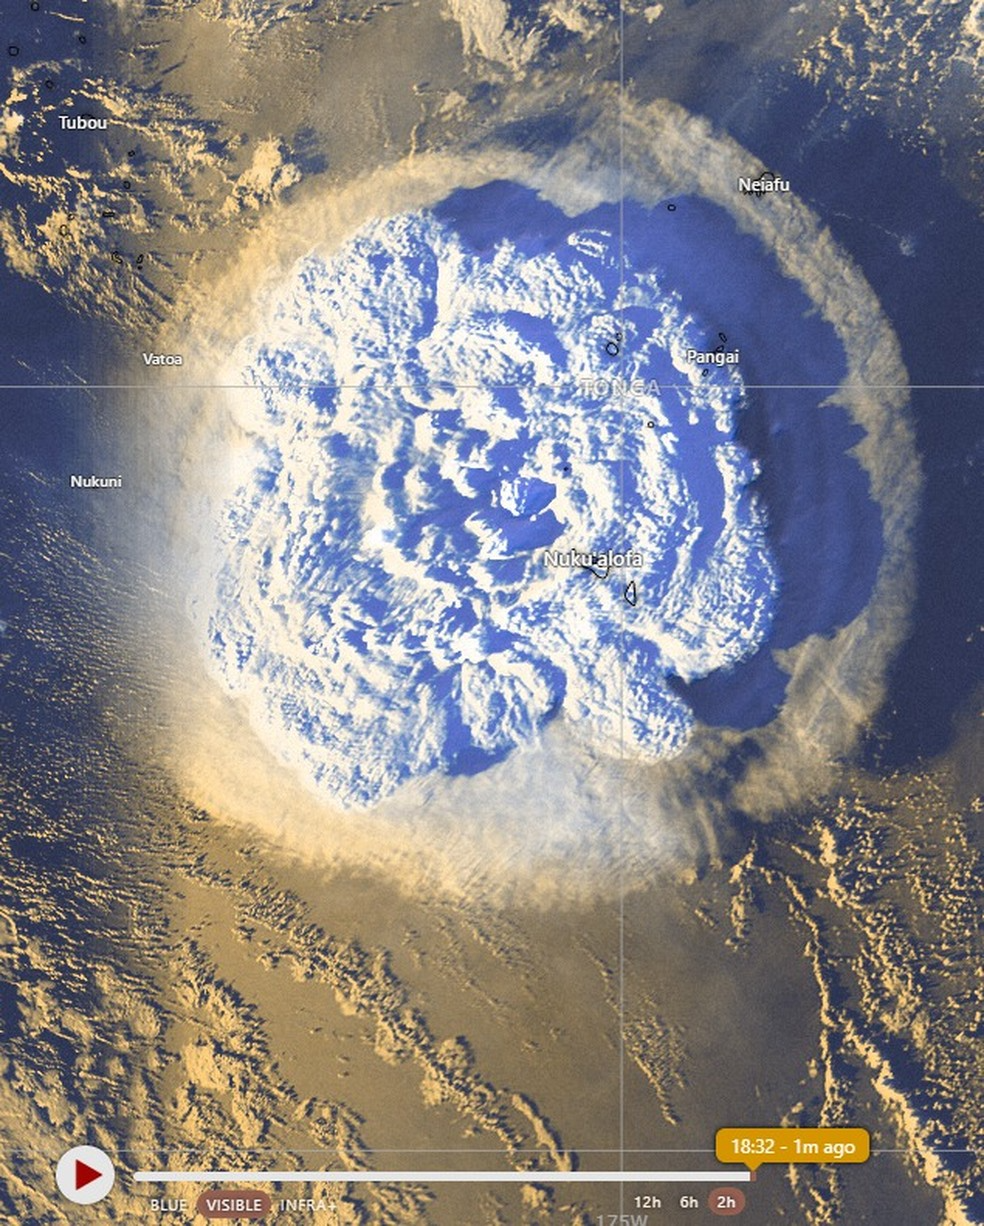 O arquipélago de Tonga fica em uma zona de atividade sísmica intensa